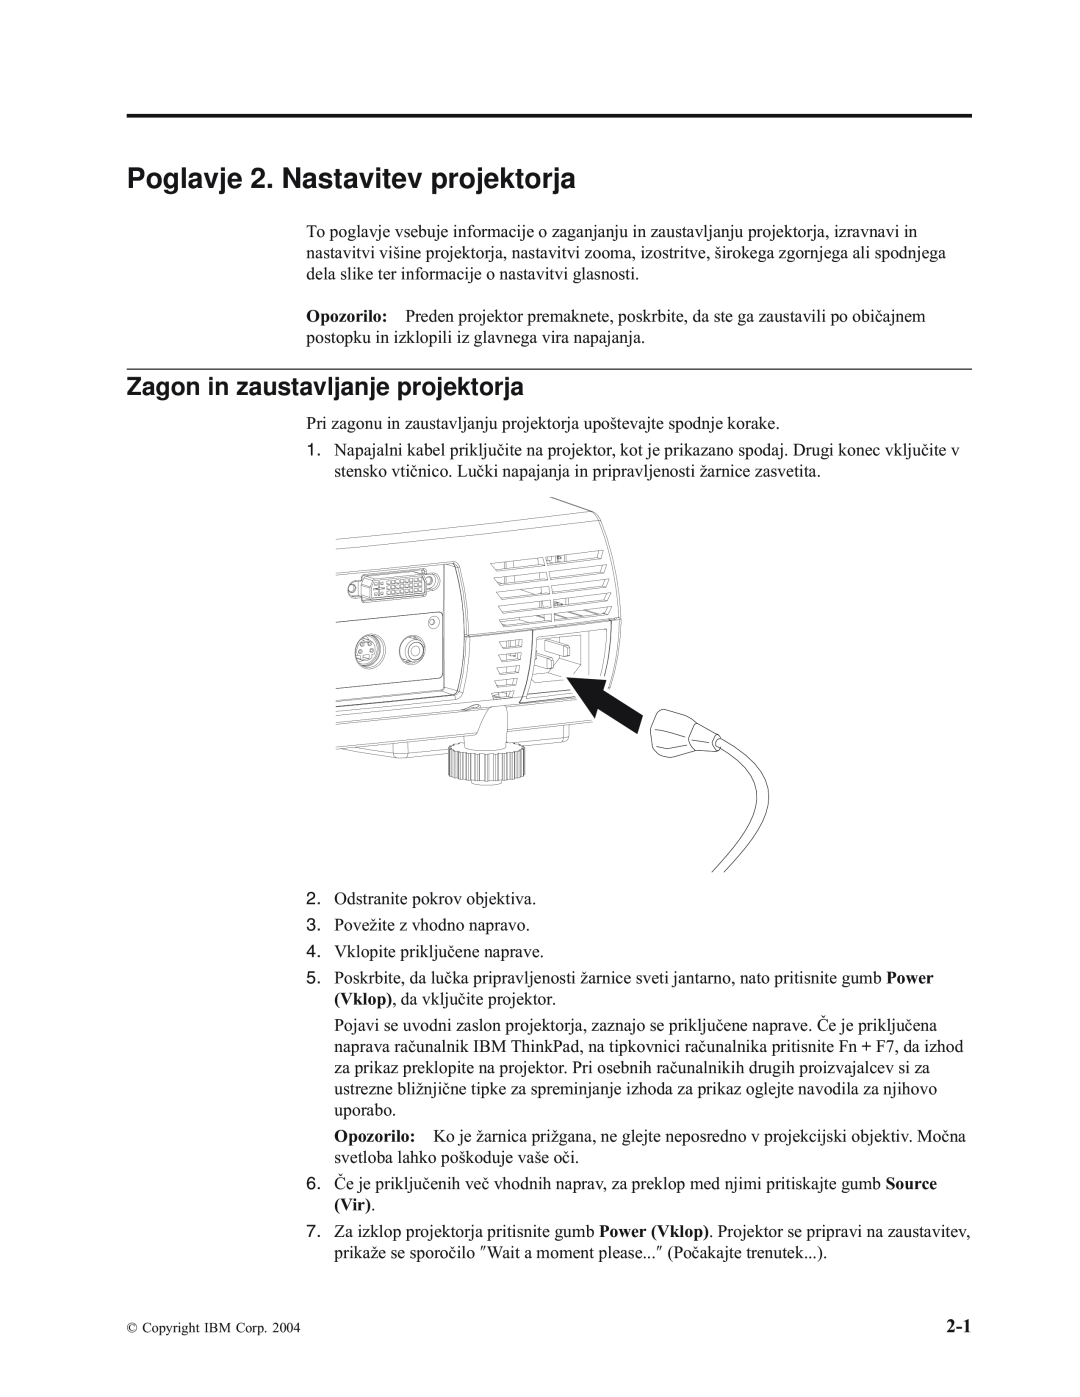 IBM E400 manual Poglavje 2. Nastavitev projektorja, Zagon in zaustavljanje projektorja 